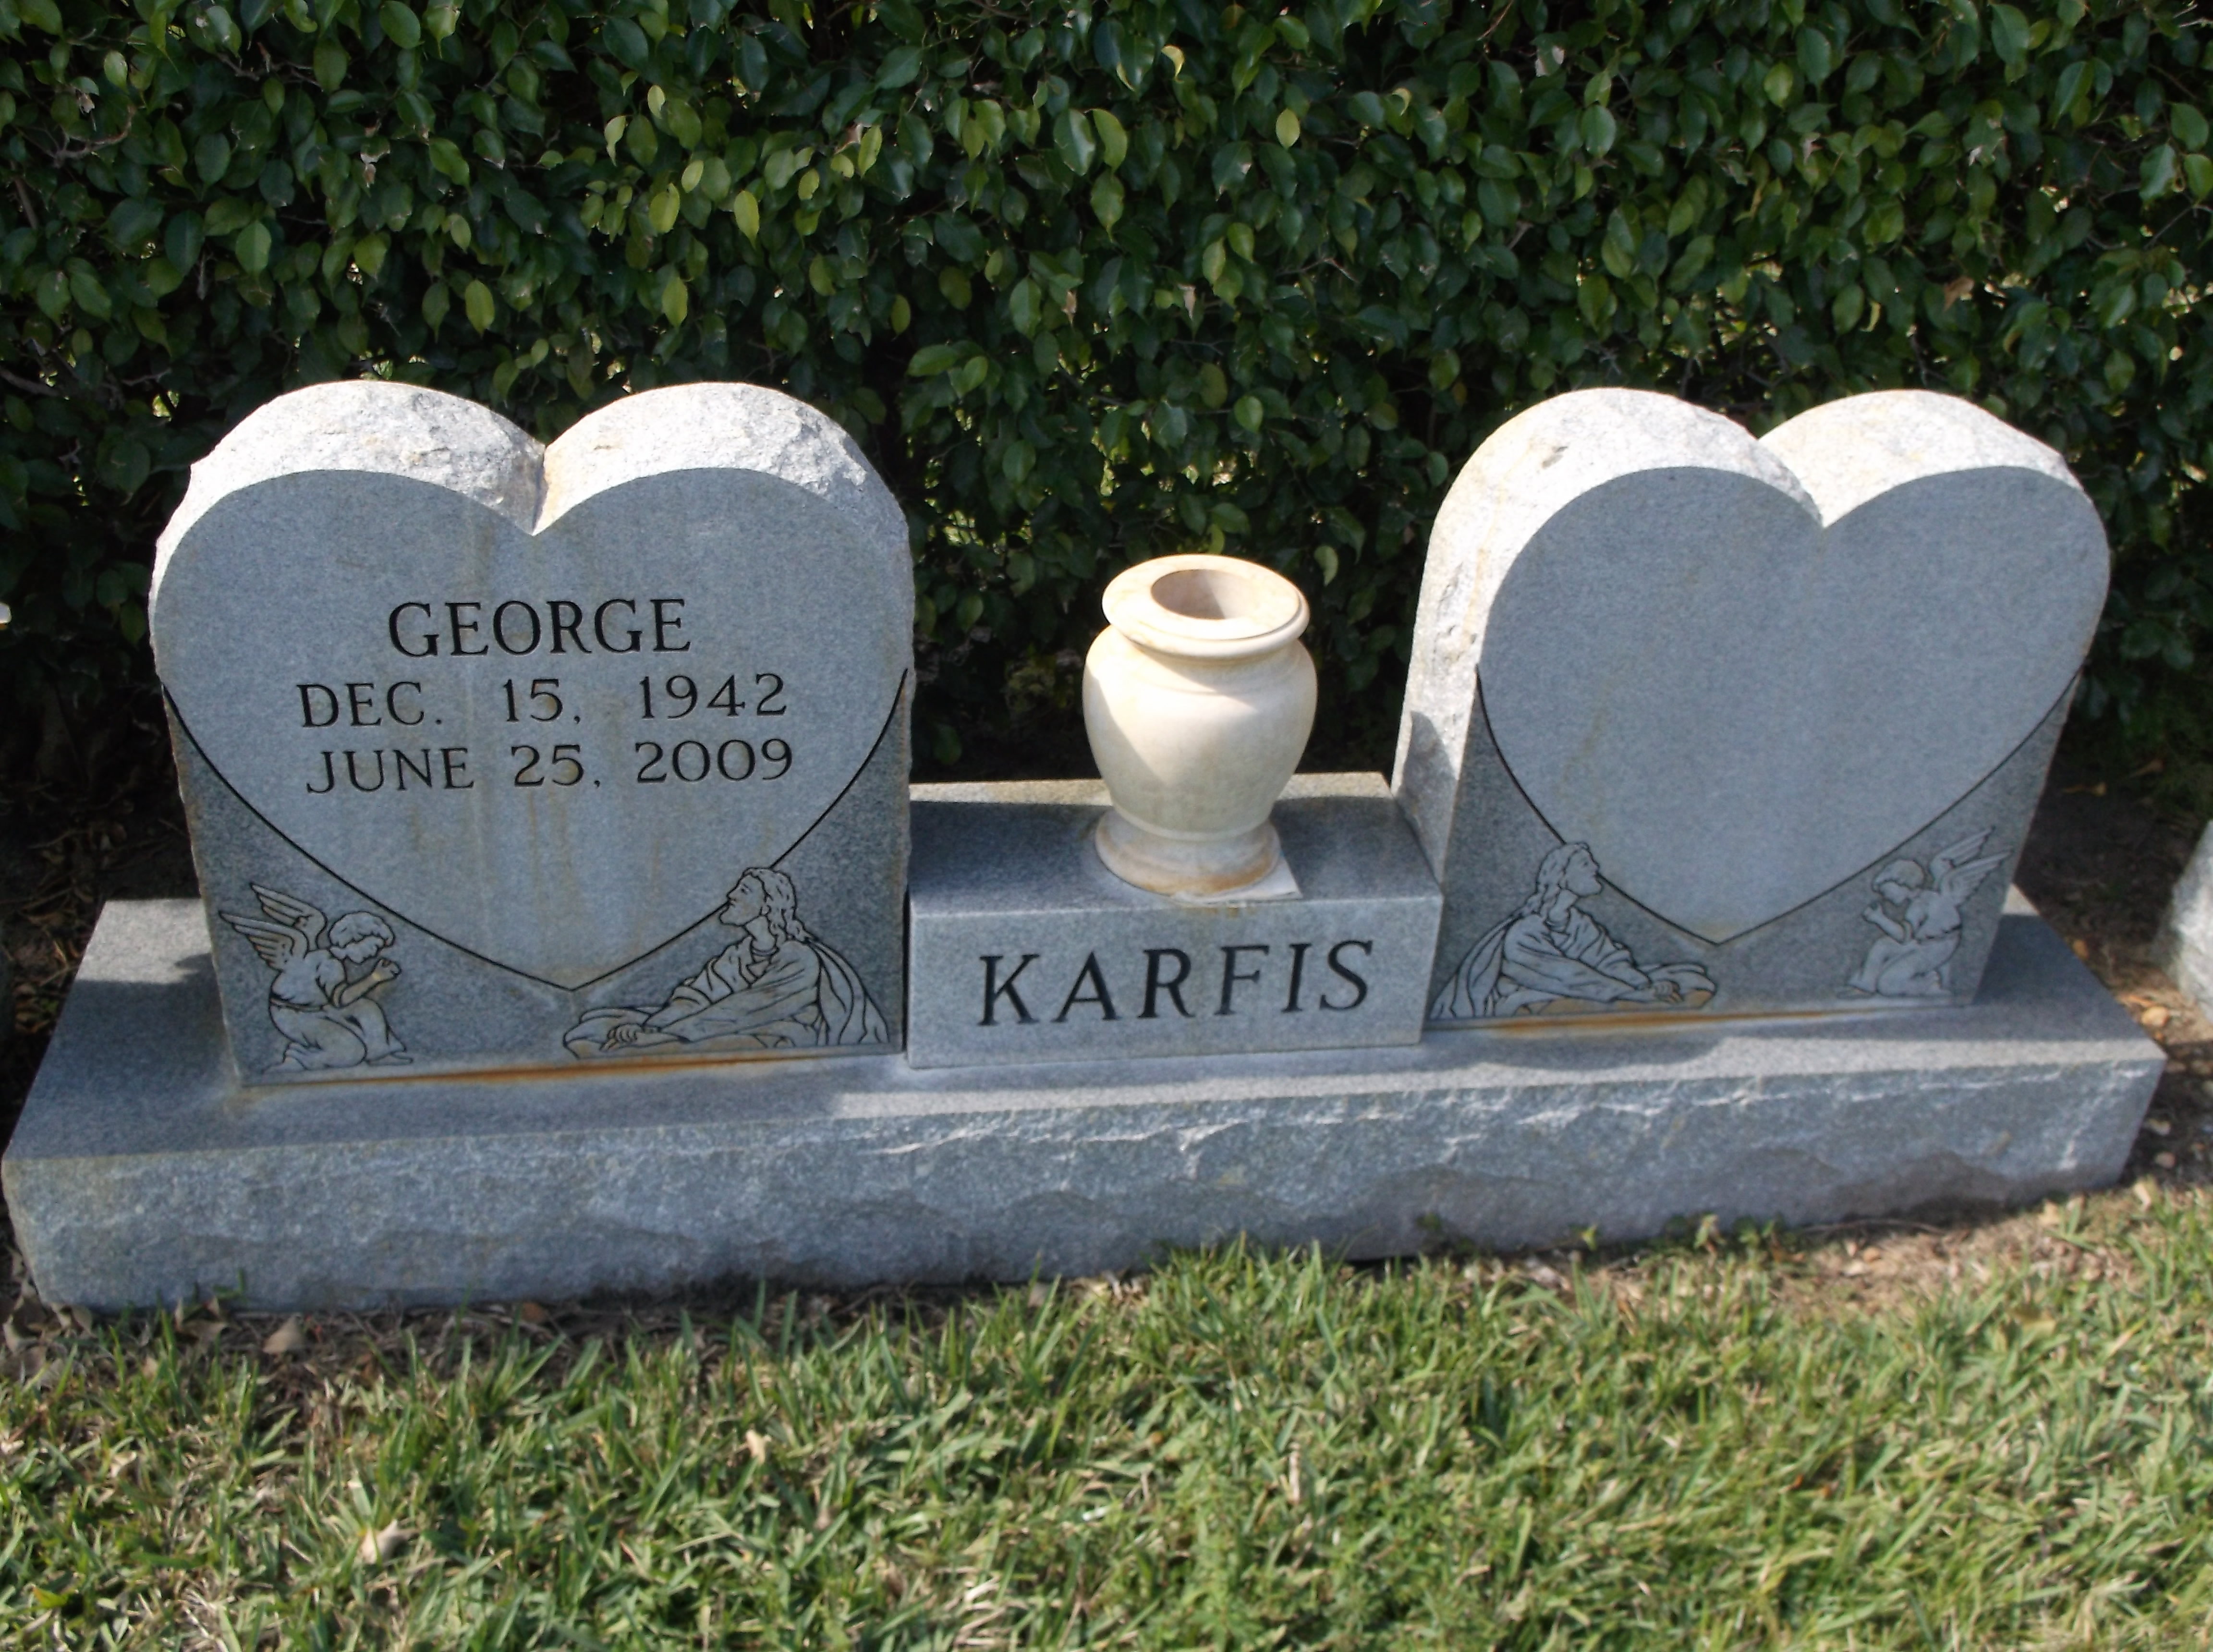 George Karfis